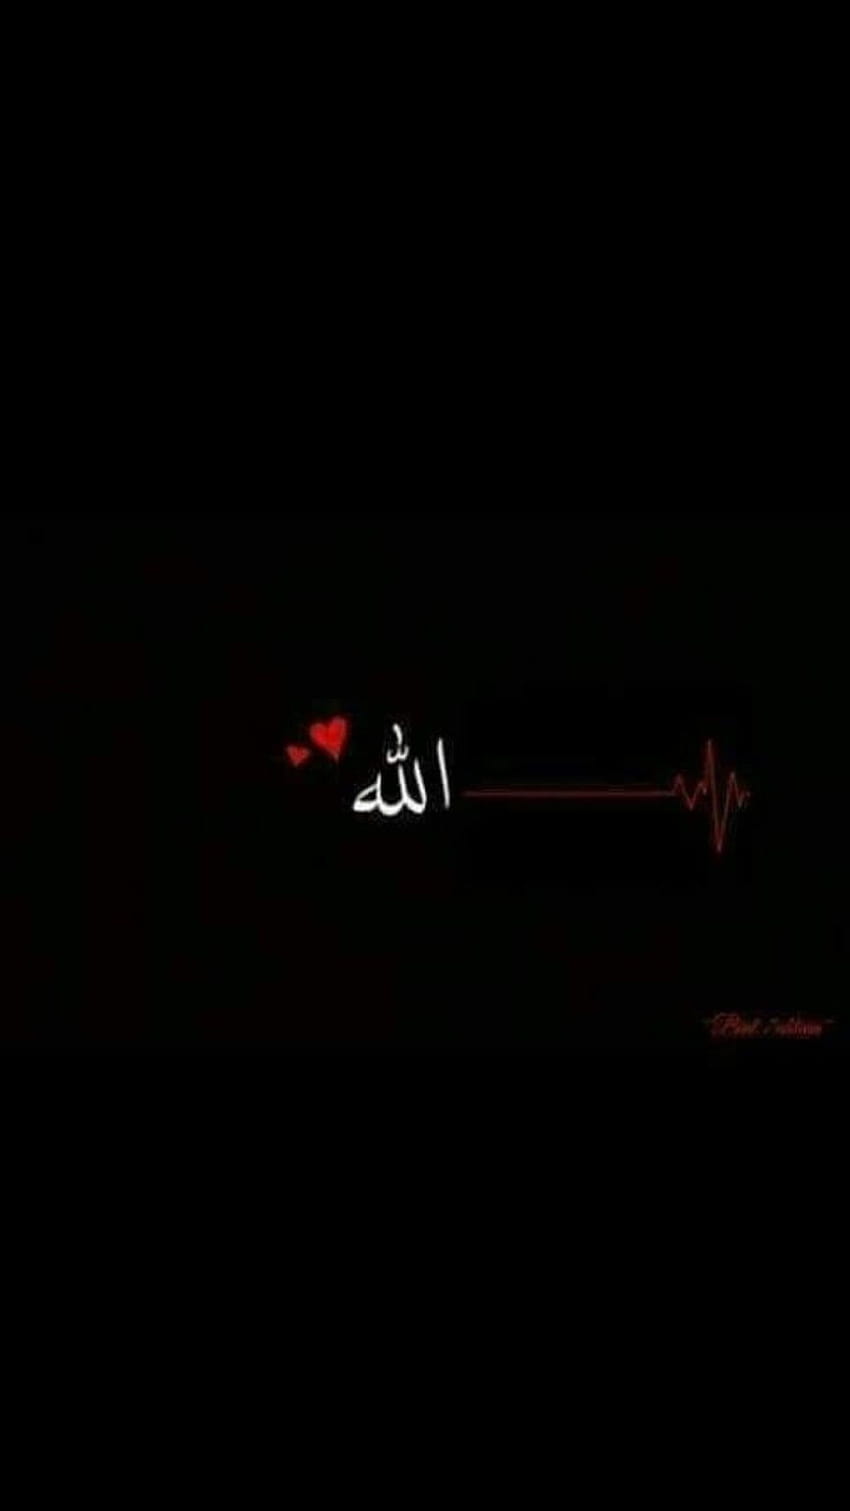 Allah, ultra islamic iphone HD phone wallpaper | Pxfuel